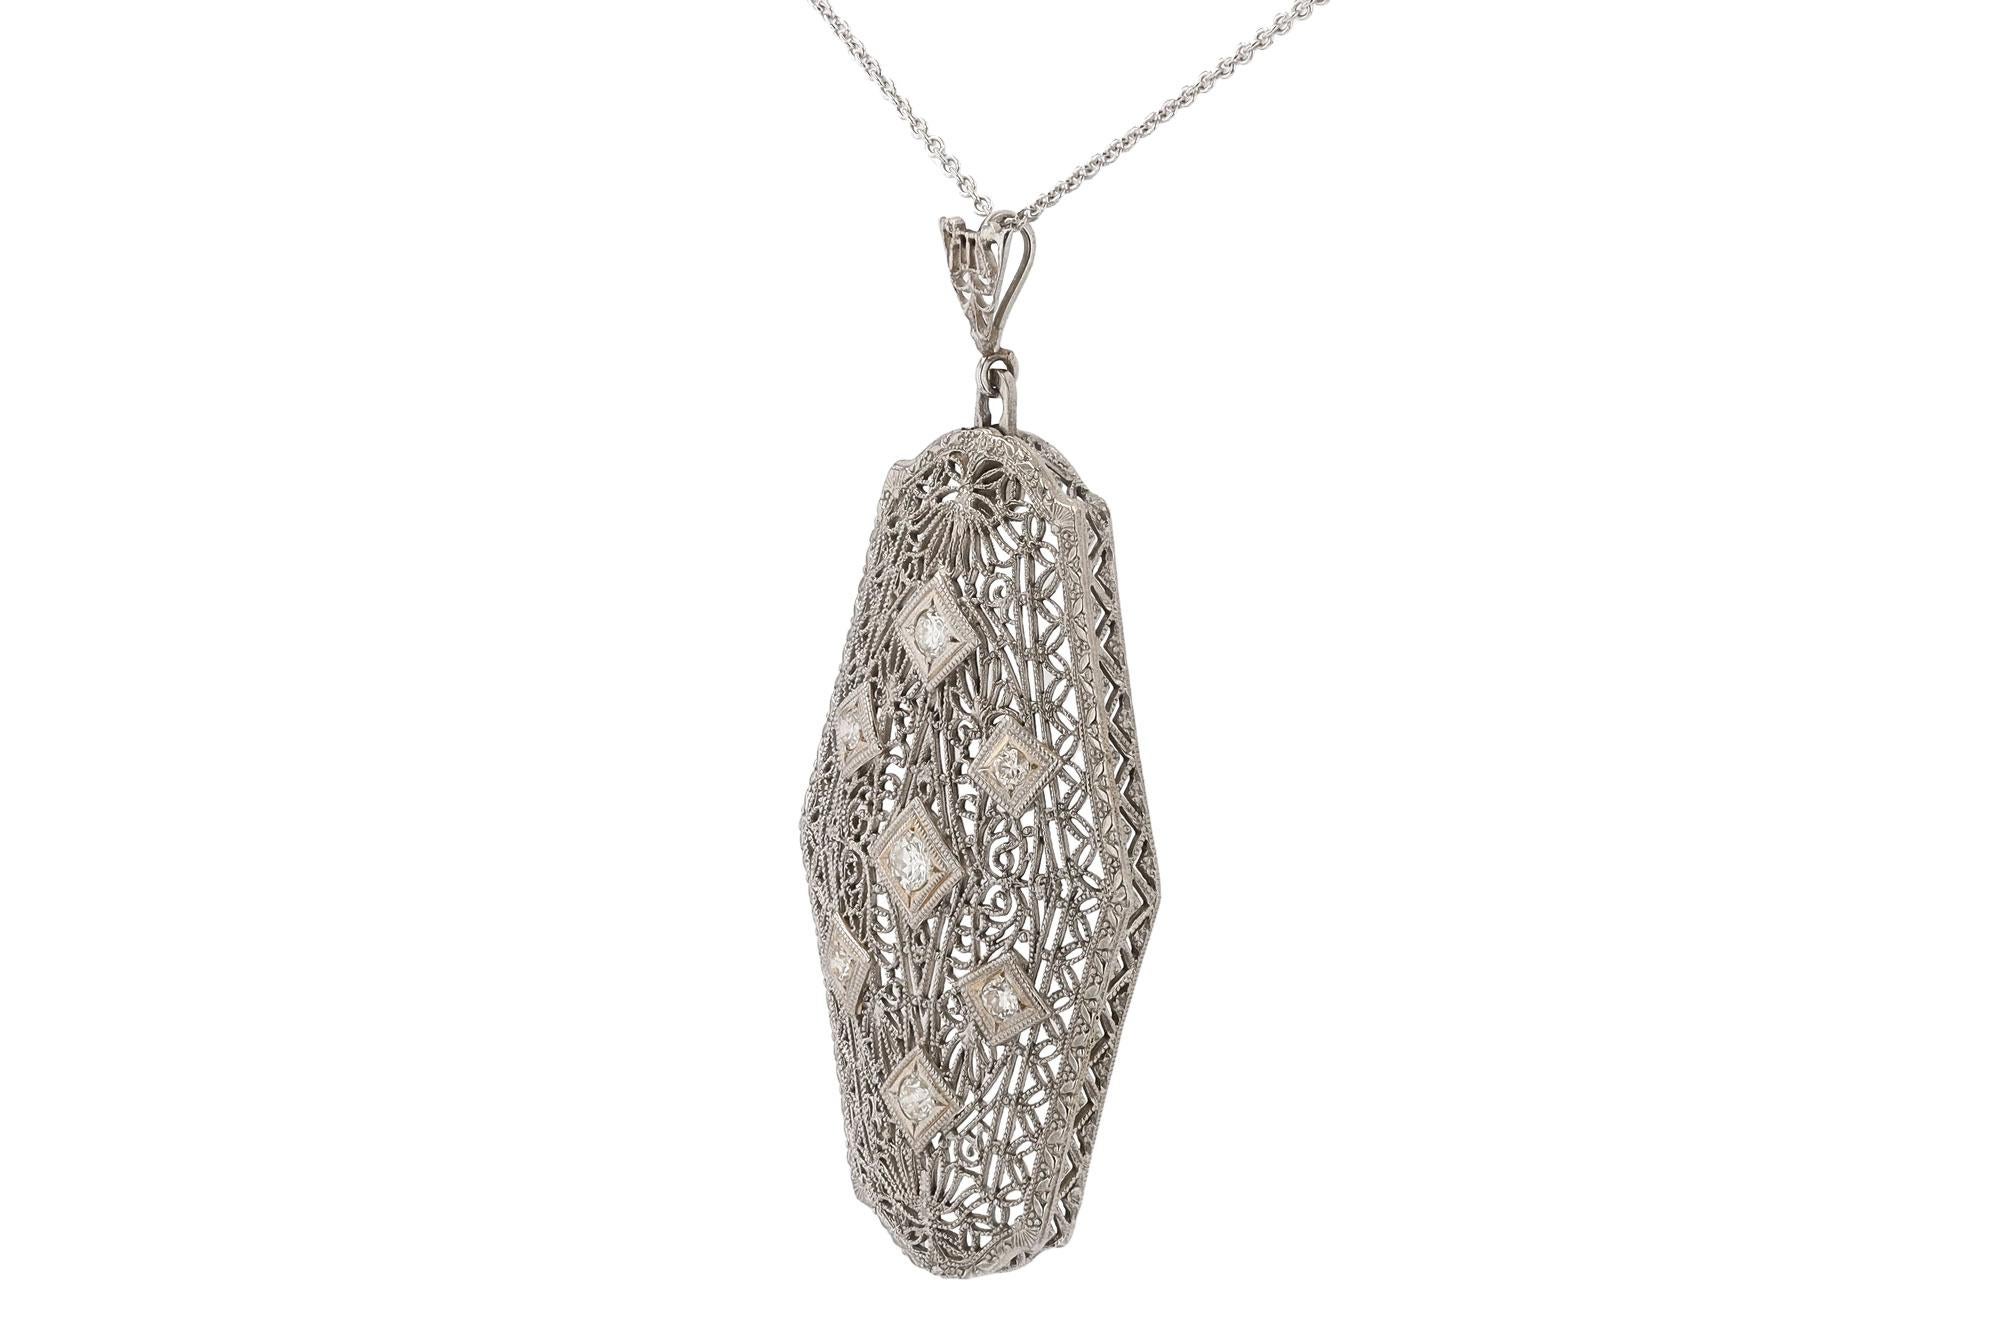 Antique Art Deco 1920s Filigree 7 Diamond Pendant Necklace In Good Condition For Sale In Santa Barbara, CA